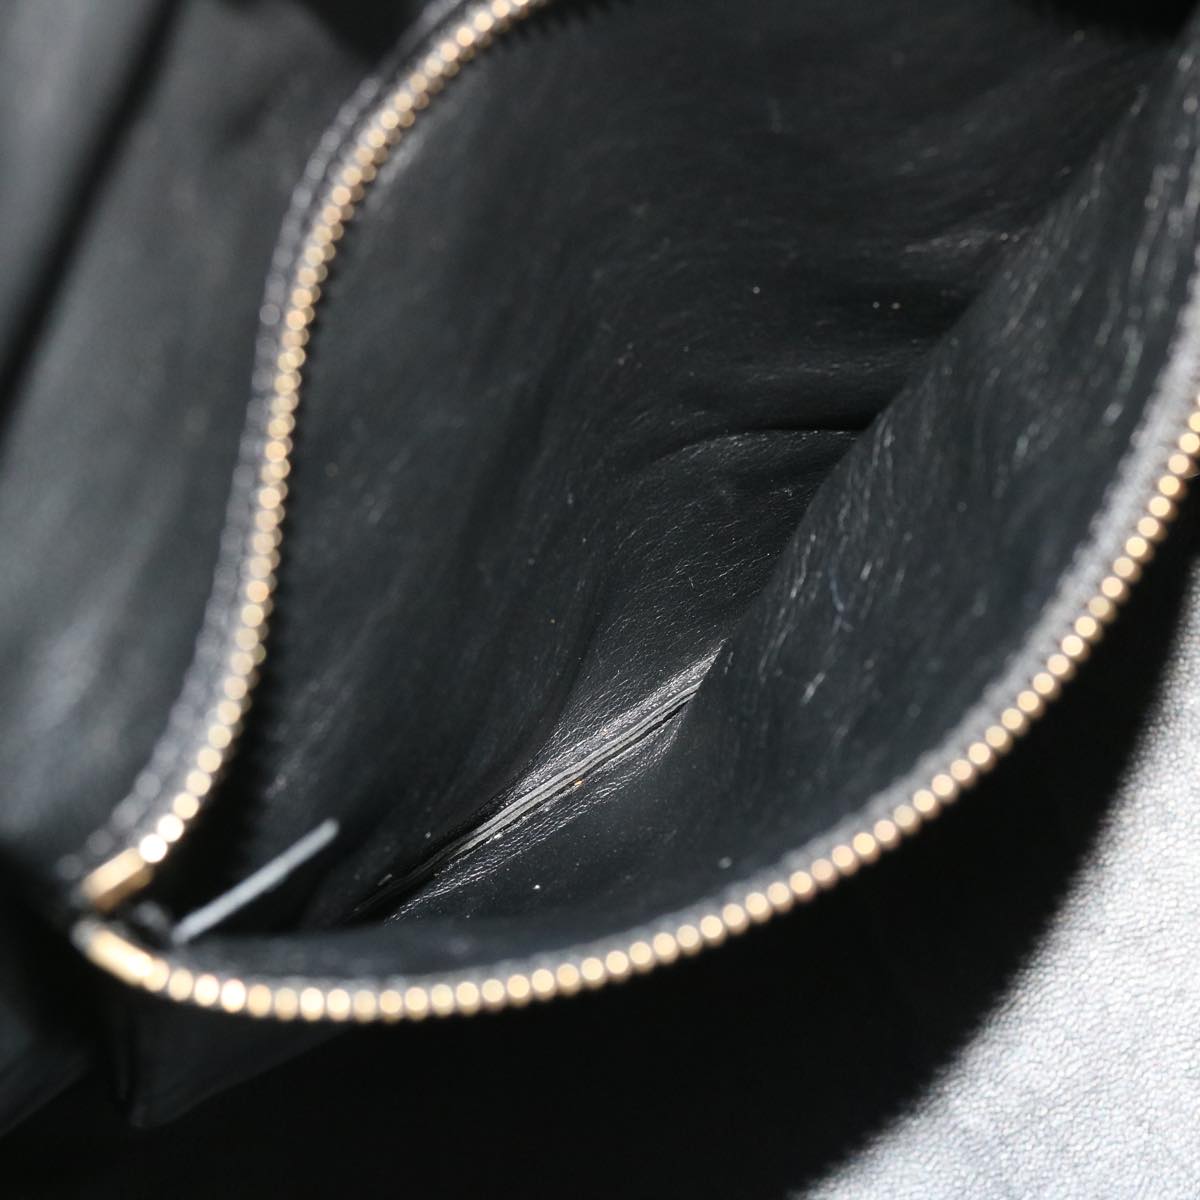 Celine Luggage Mini Hand Bag Leather Black Auth 51427